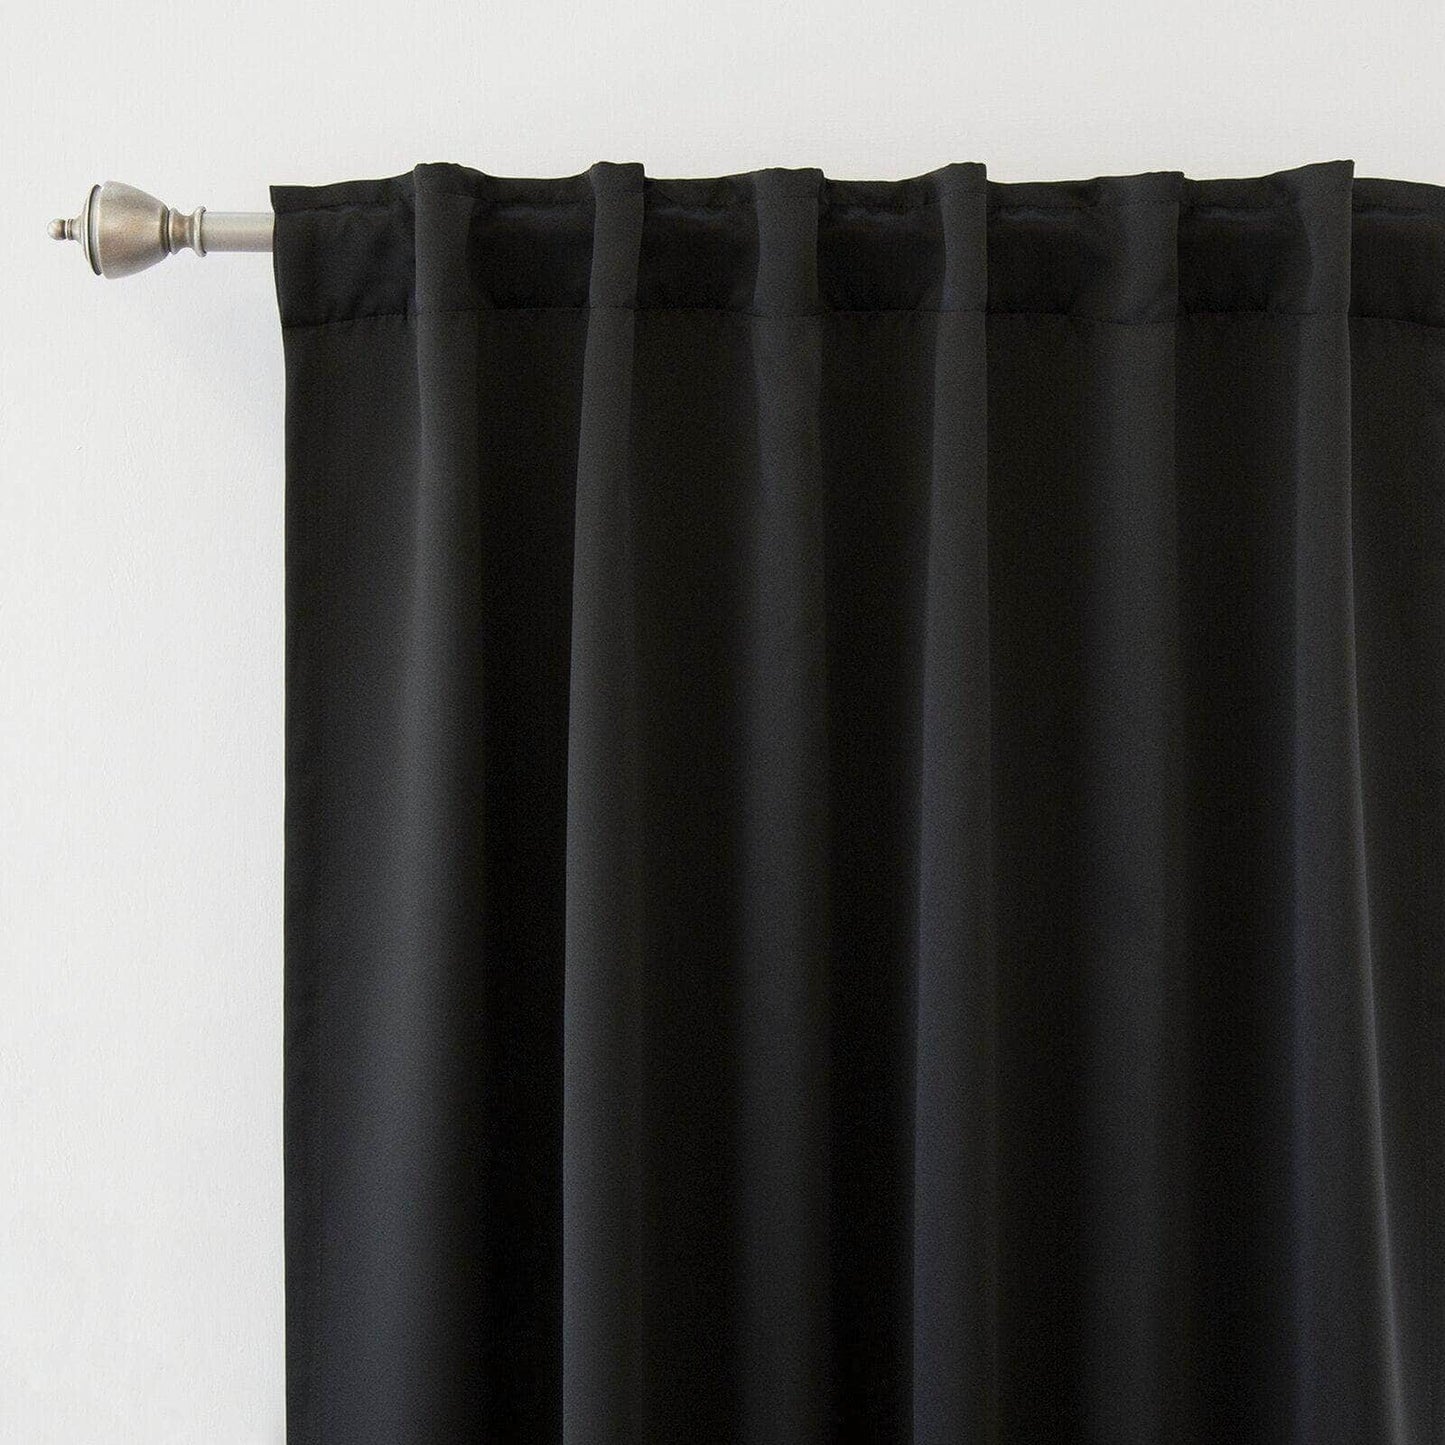 Penguin Group Curtains 250 H × 140 W (cm) Black Velvet RikTig curtain